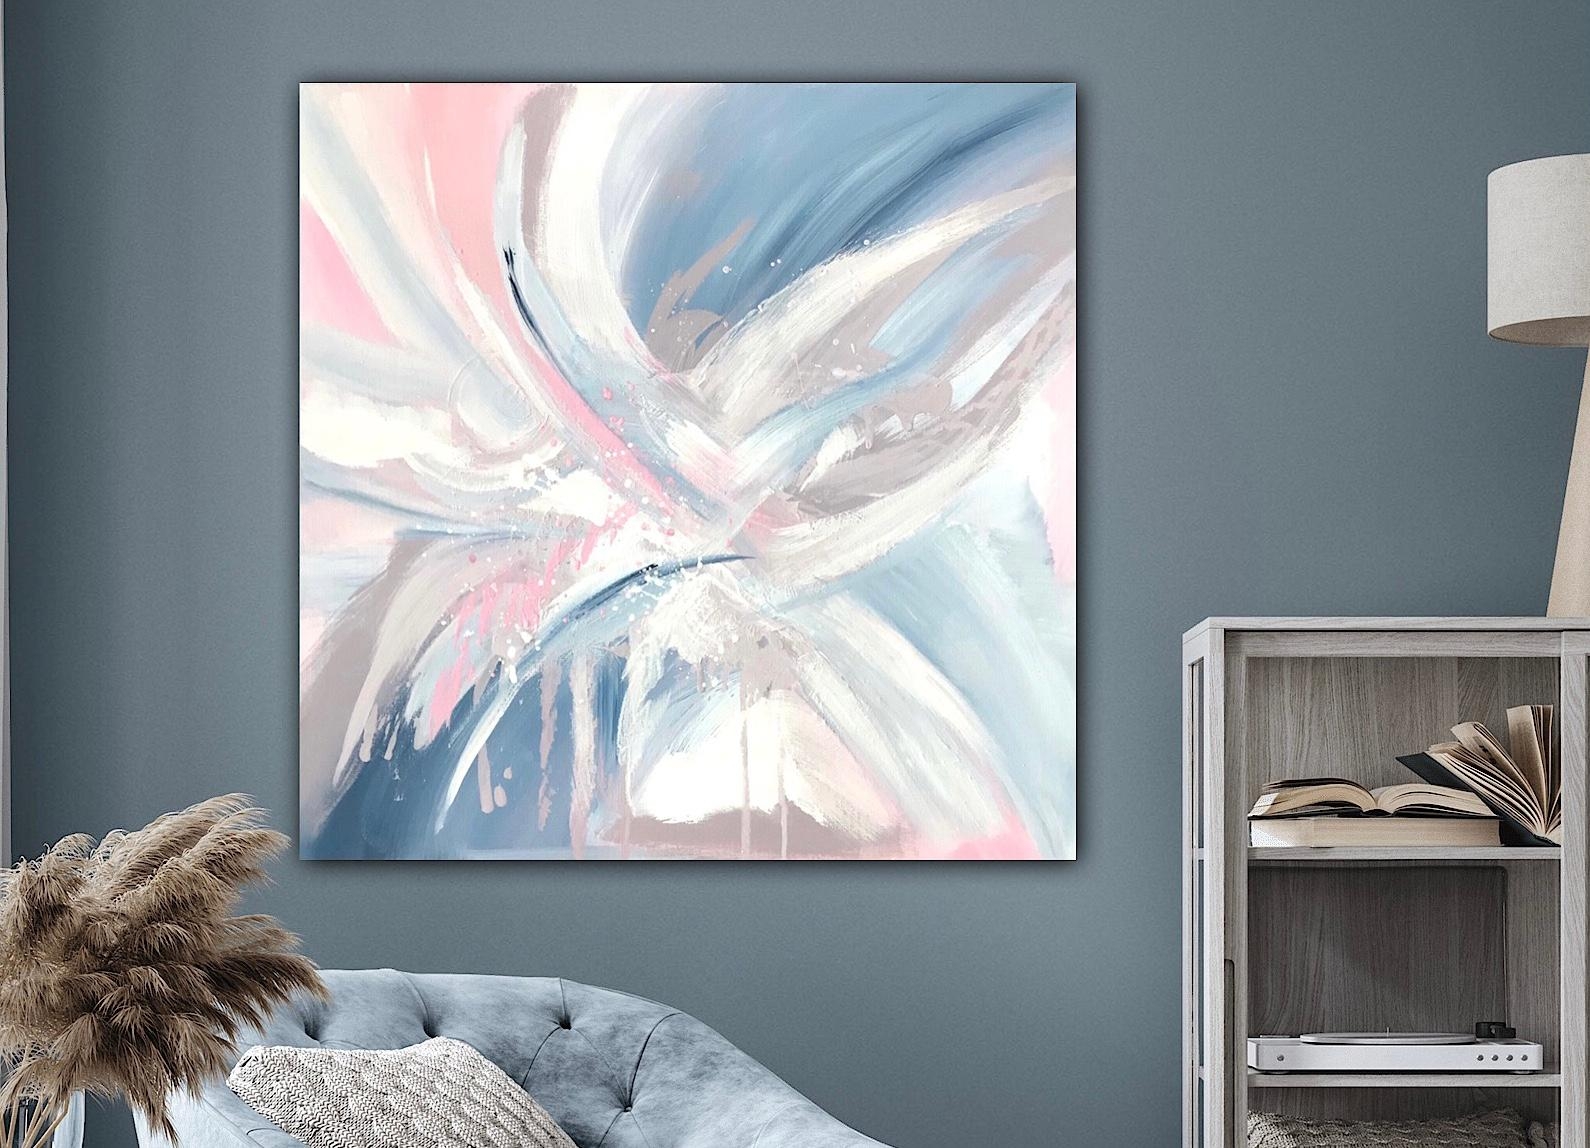 🤍 Engel’s Flügel - 60 x 60 cm - verfügbar 

#deko #art #couchstyle #couchliebe #wohnzimmer #pastel